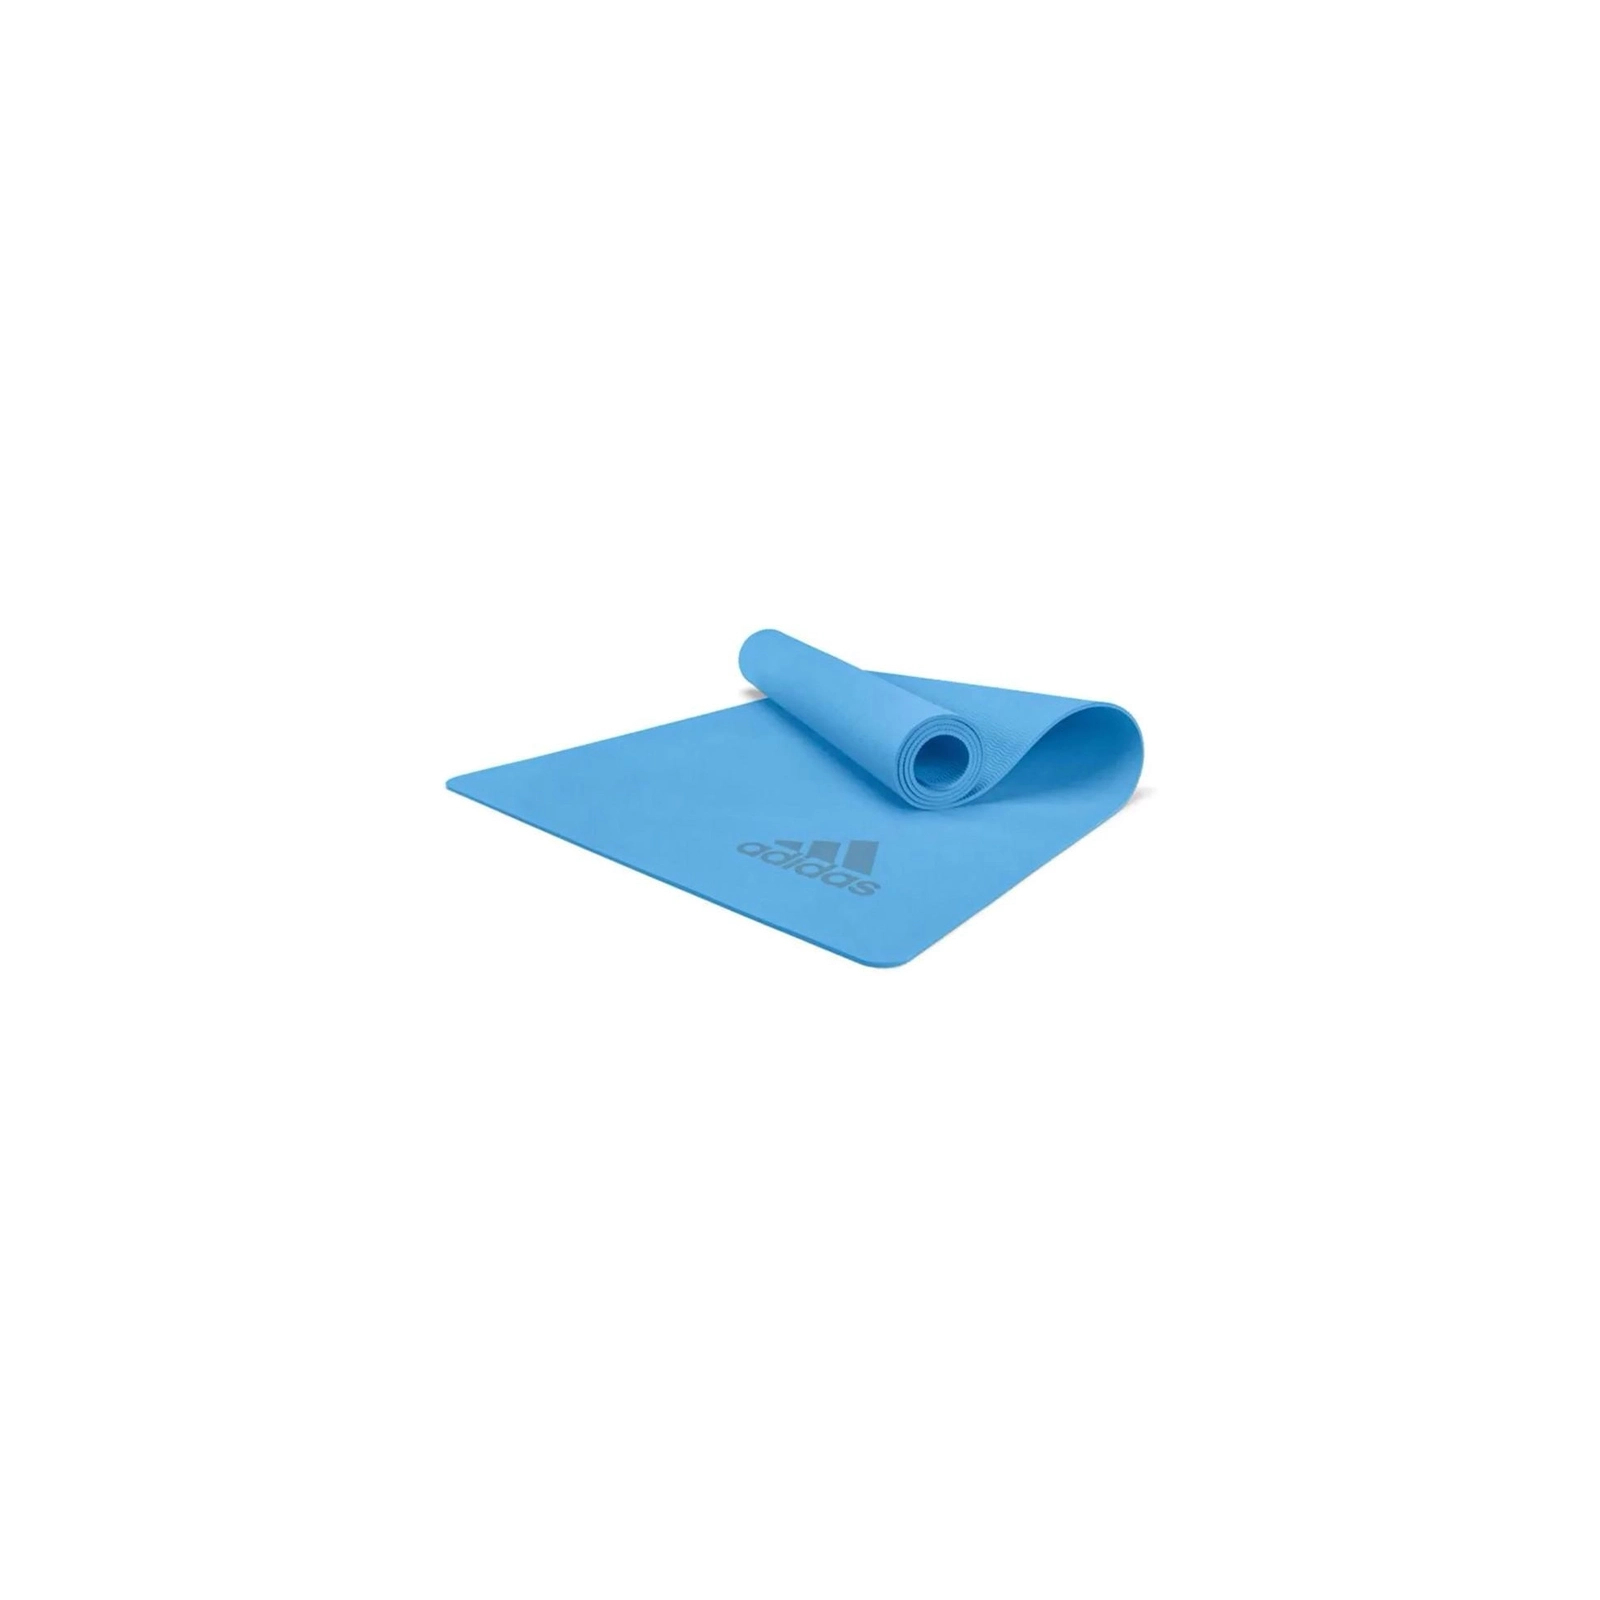 Коврик для йоги Adidas Premium Yoga Mat Уні 176 х 61 х 0,5 см Блакитний (ADYG-10300GB)